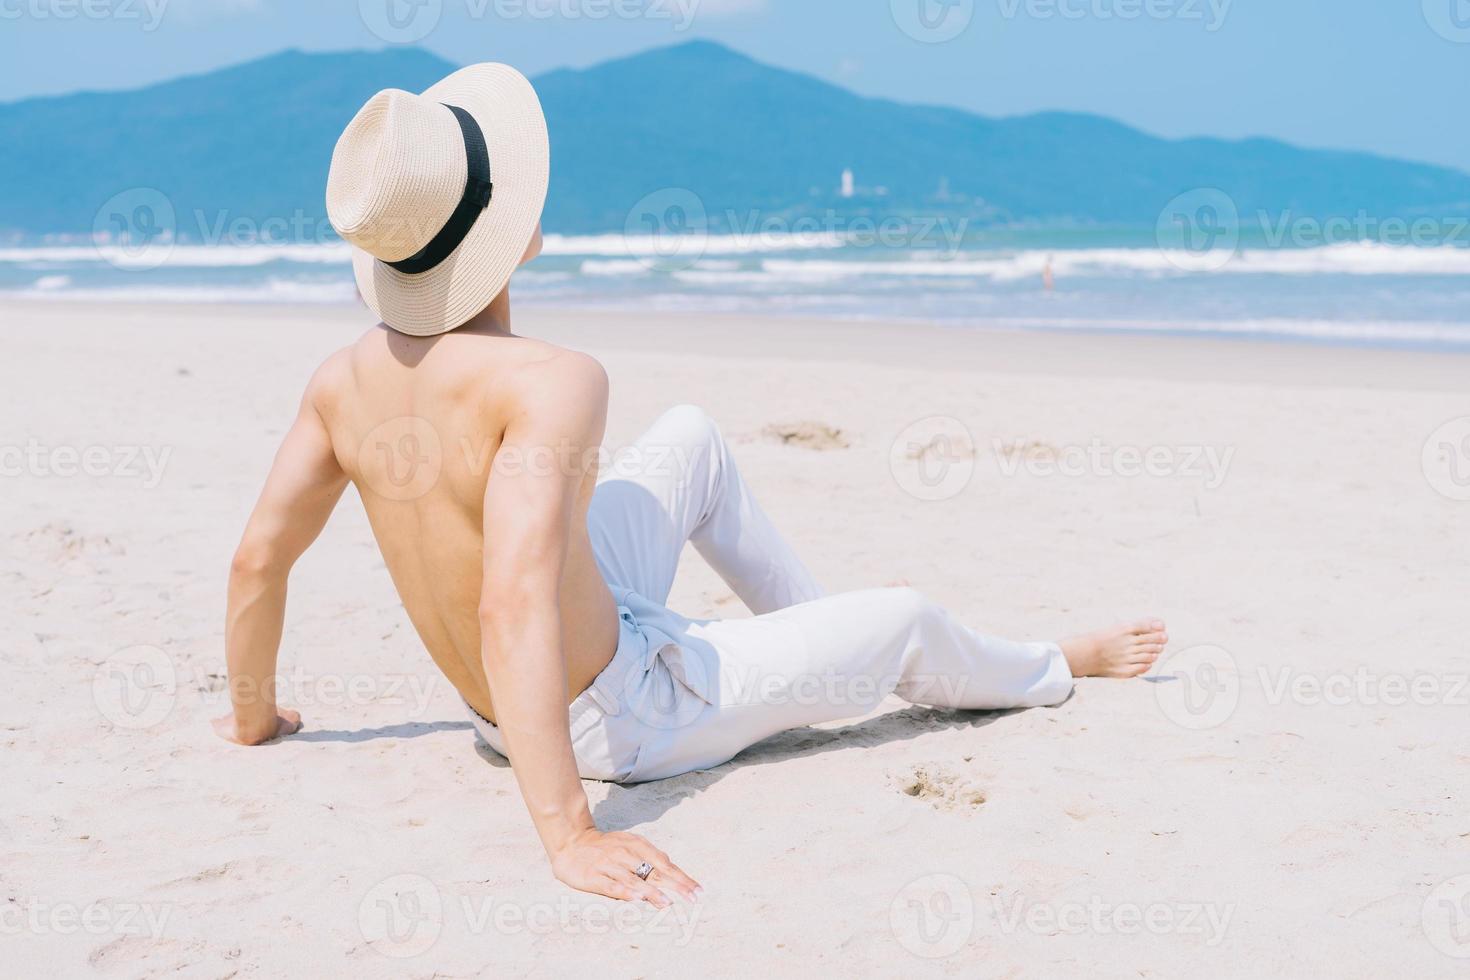 barbackad ung asiatisk man som sitter på sanden och tittar på havet foto